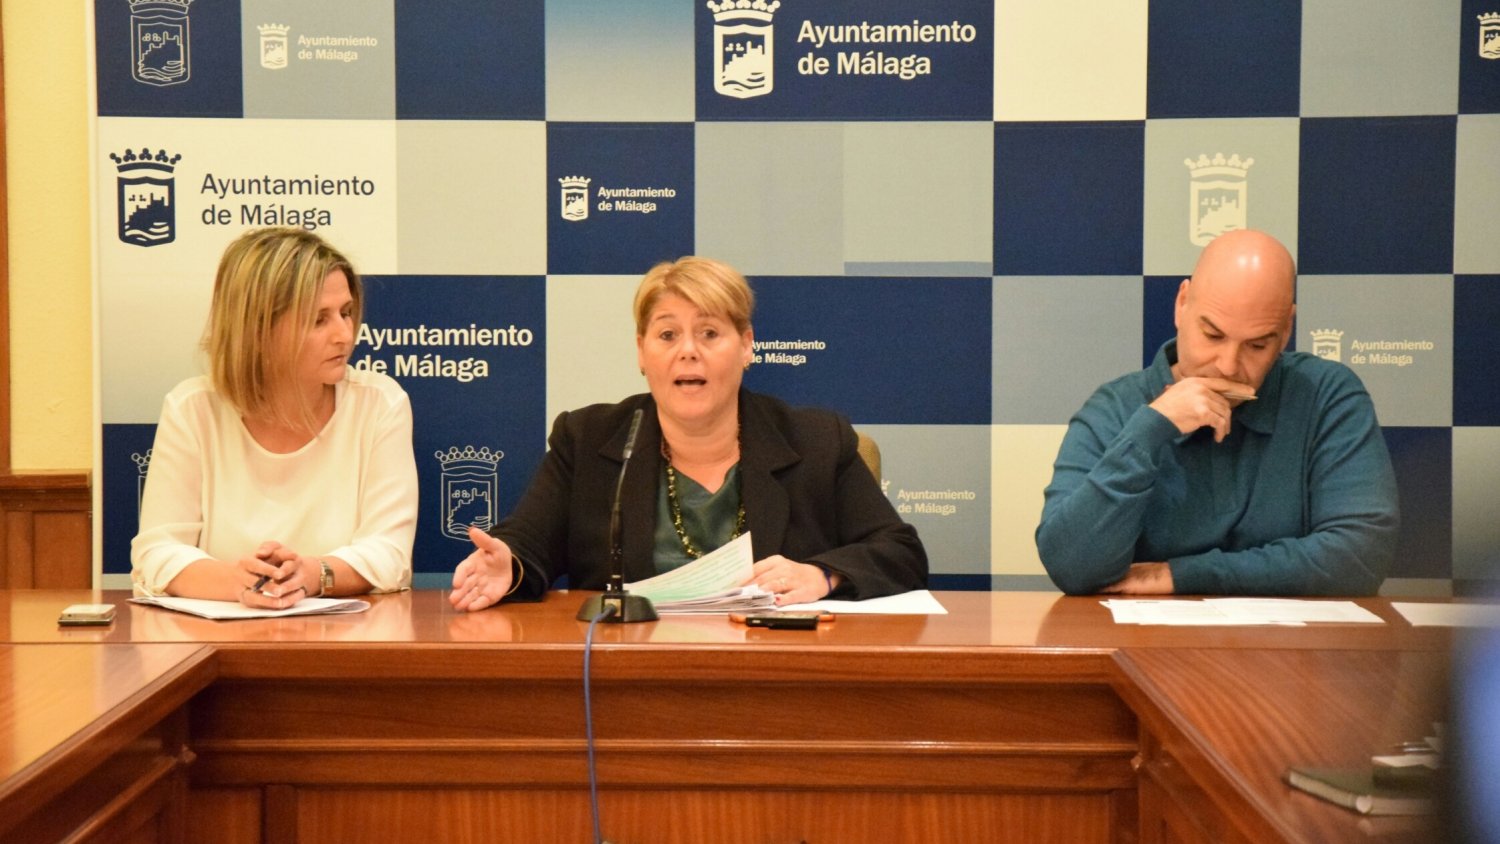 El PSOE pide una investigación interna sobre la existencia de falsos autónomos en el Ayuntamiento de Málaga